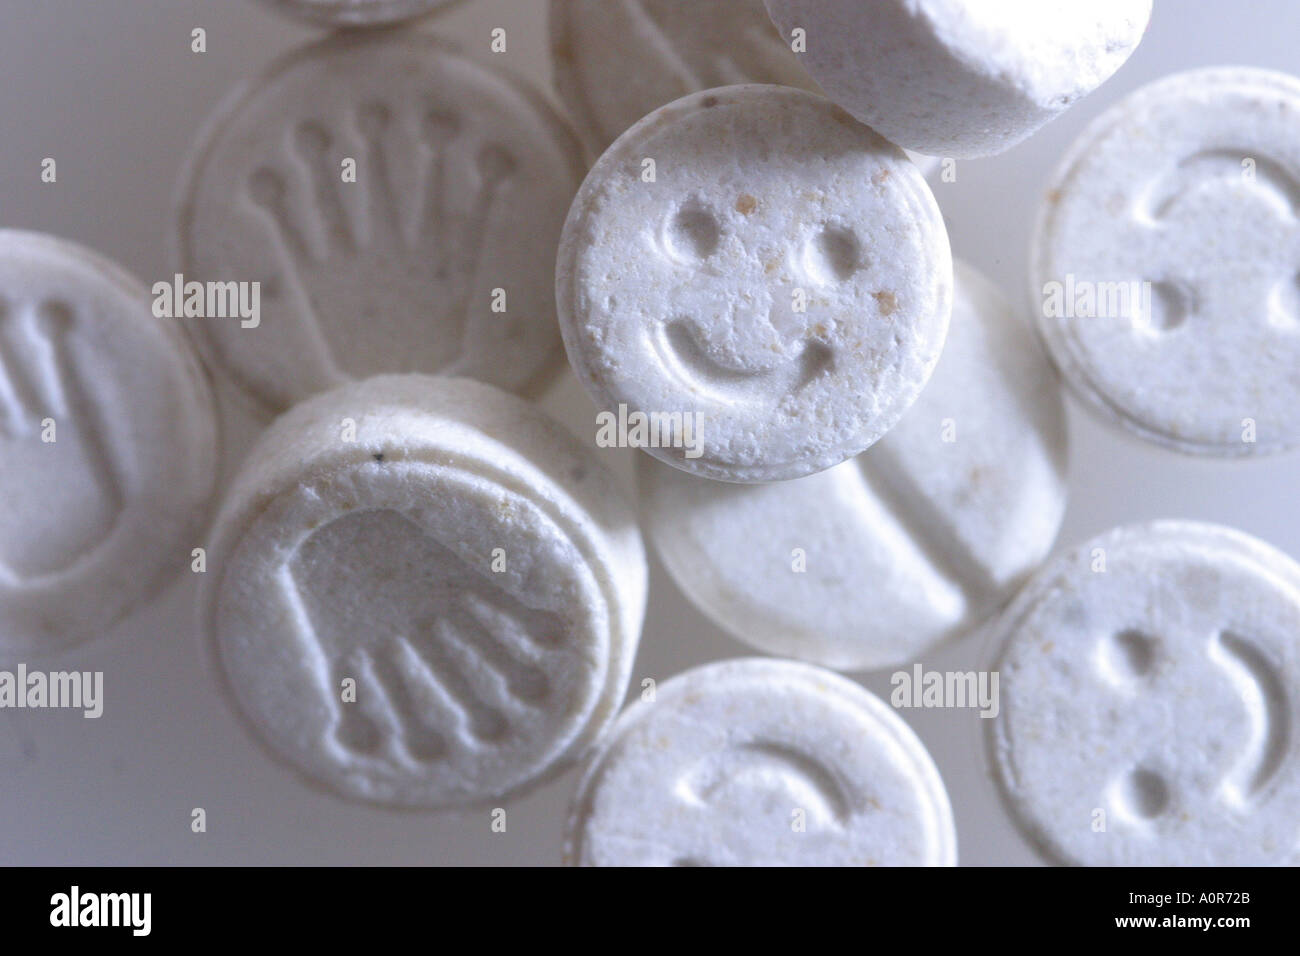 Le pasticche di ecstasy e s pillole con una faccina sorridente sul fronte  delle pillole methylenedioxymethamphetamine studio still life Foto stock -  Alamy